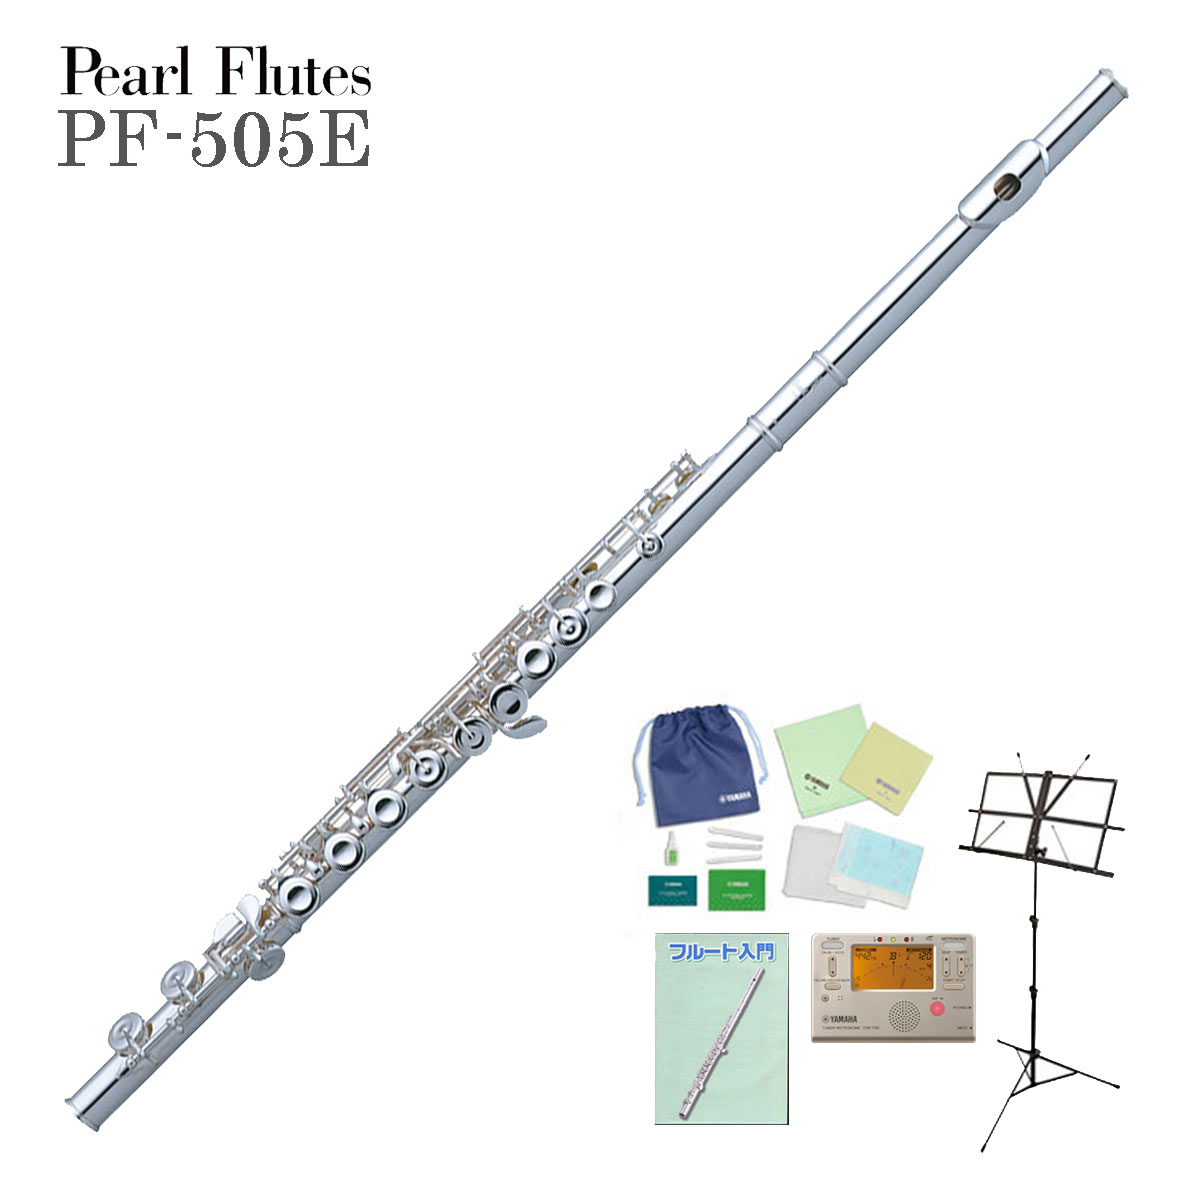 【あす楽対象商品】Pearl Flute / PF-505E パールフルート PF505E 洋銀製 初心者に最適！ 【全部入りセット】《未展示保管の新品をお届け》《5年保証》